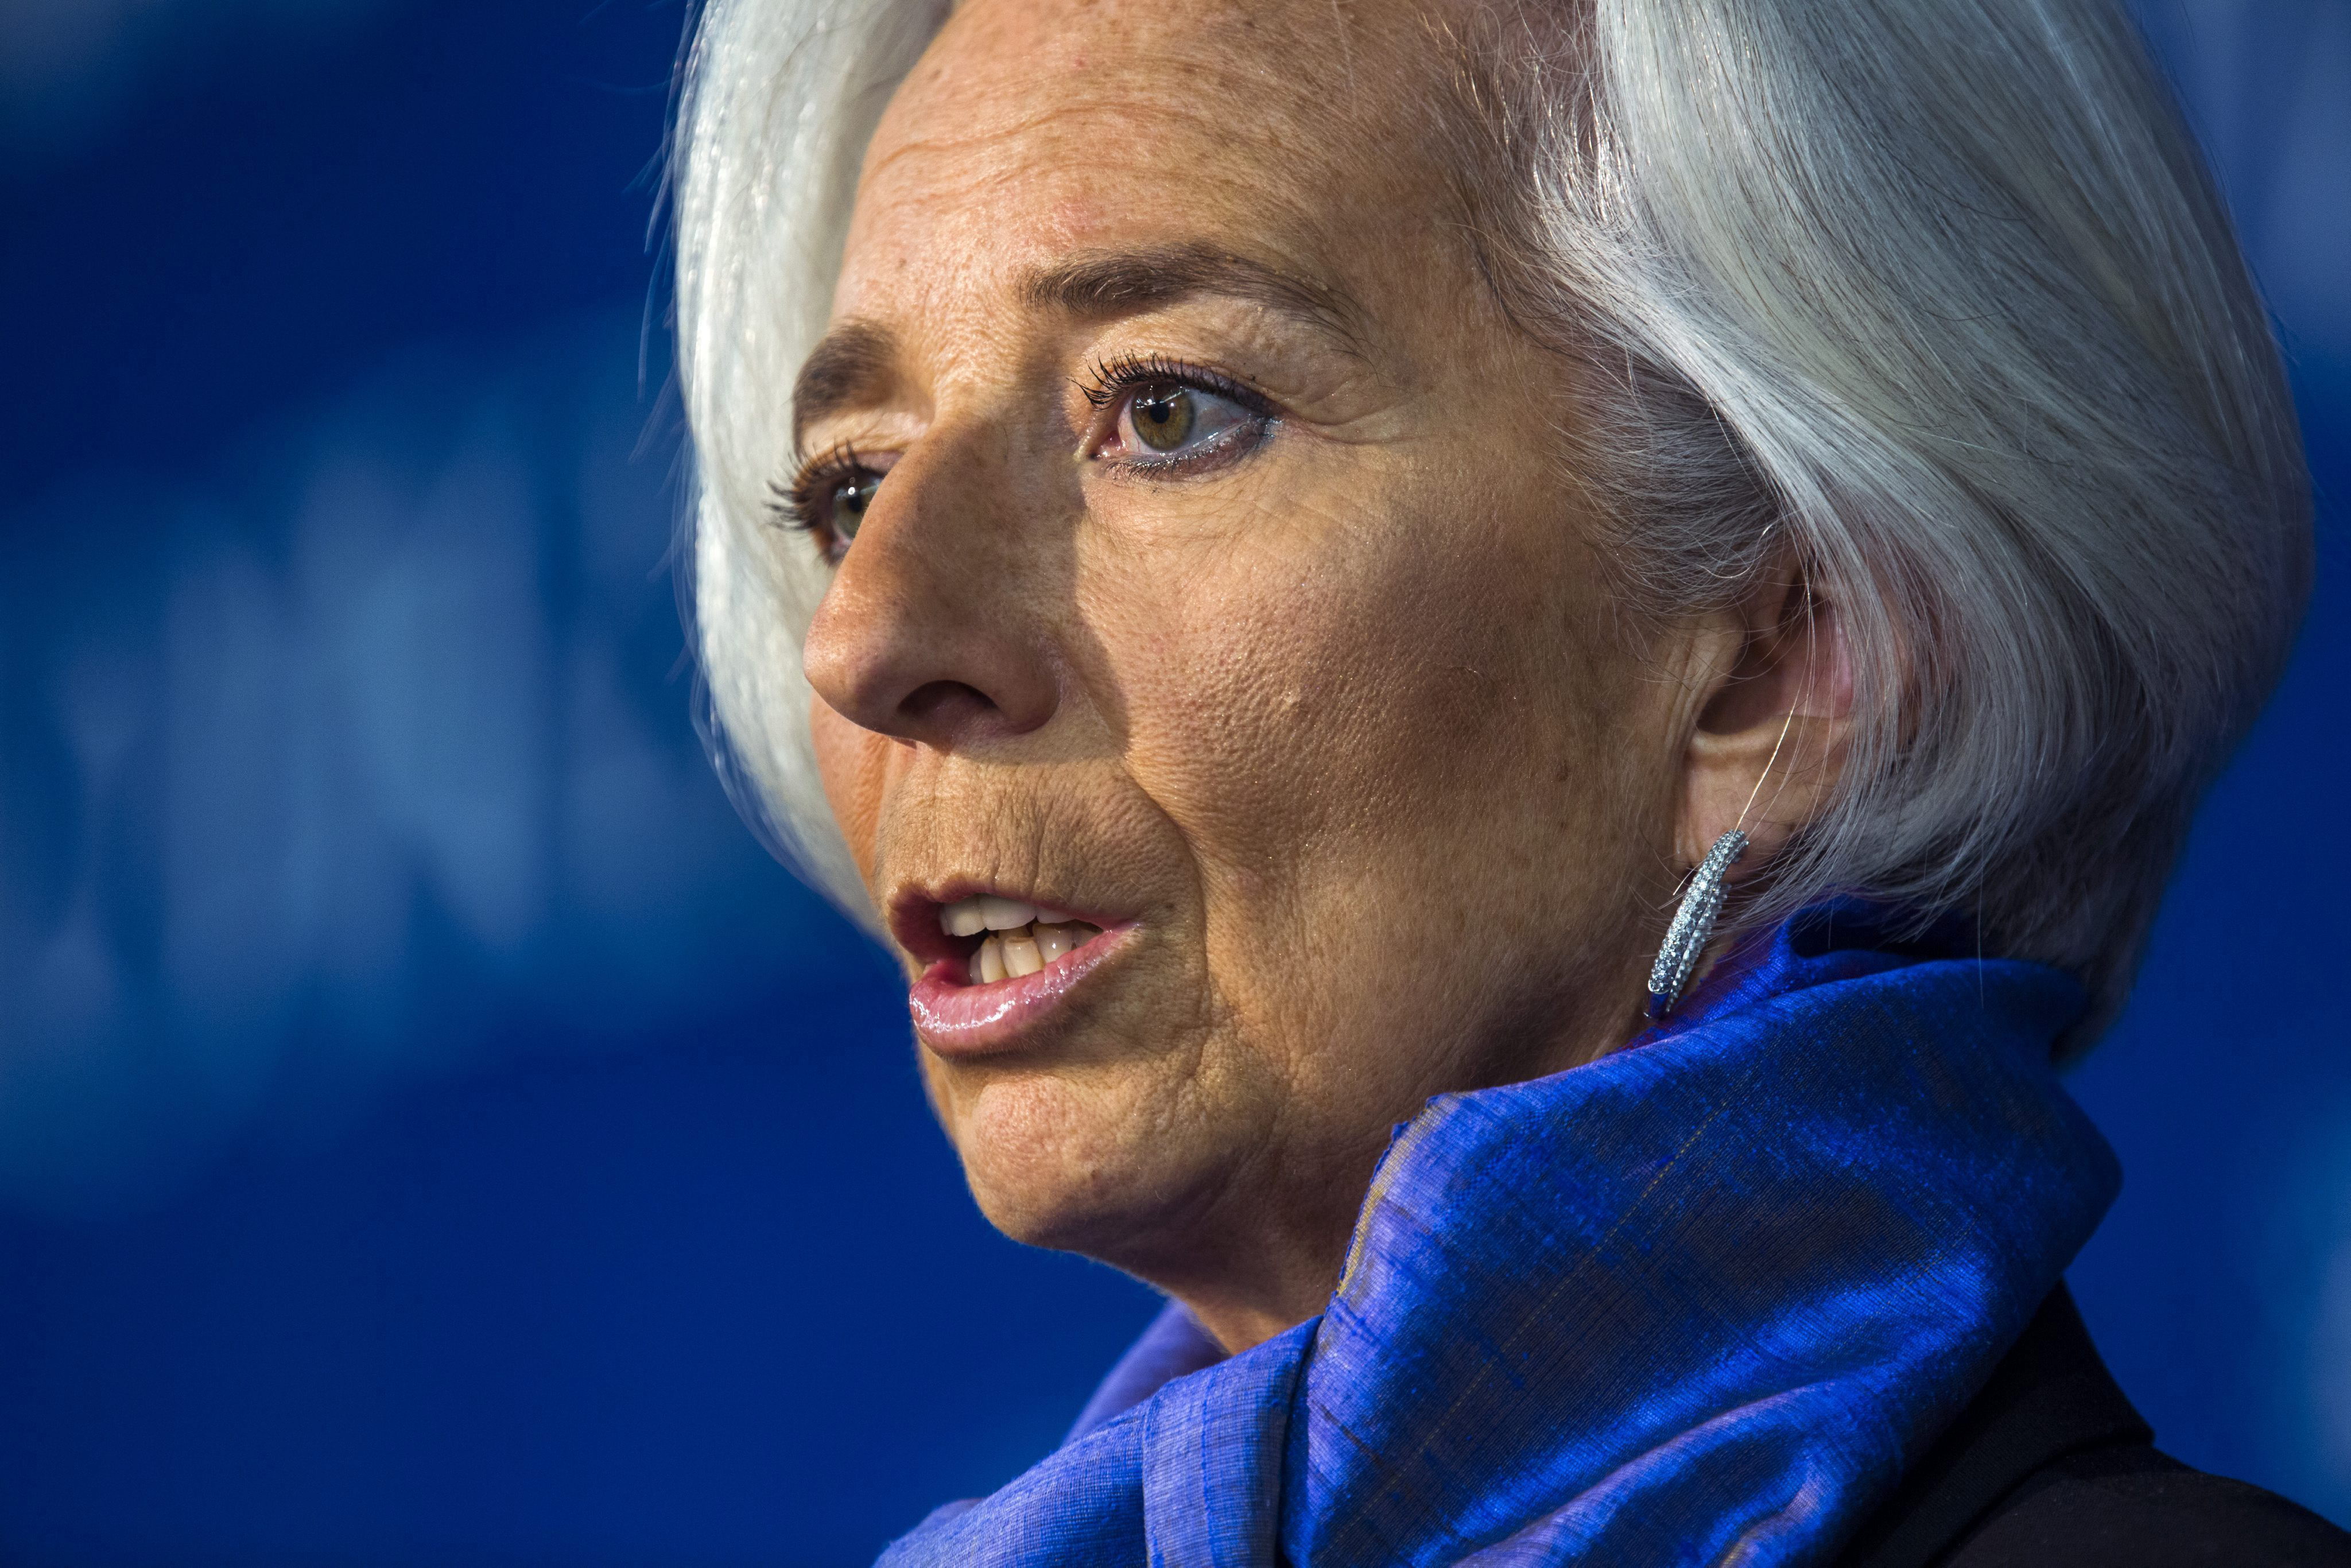 El FMI dice que lo más importante ahora mismo en España es continuar con las reformas